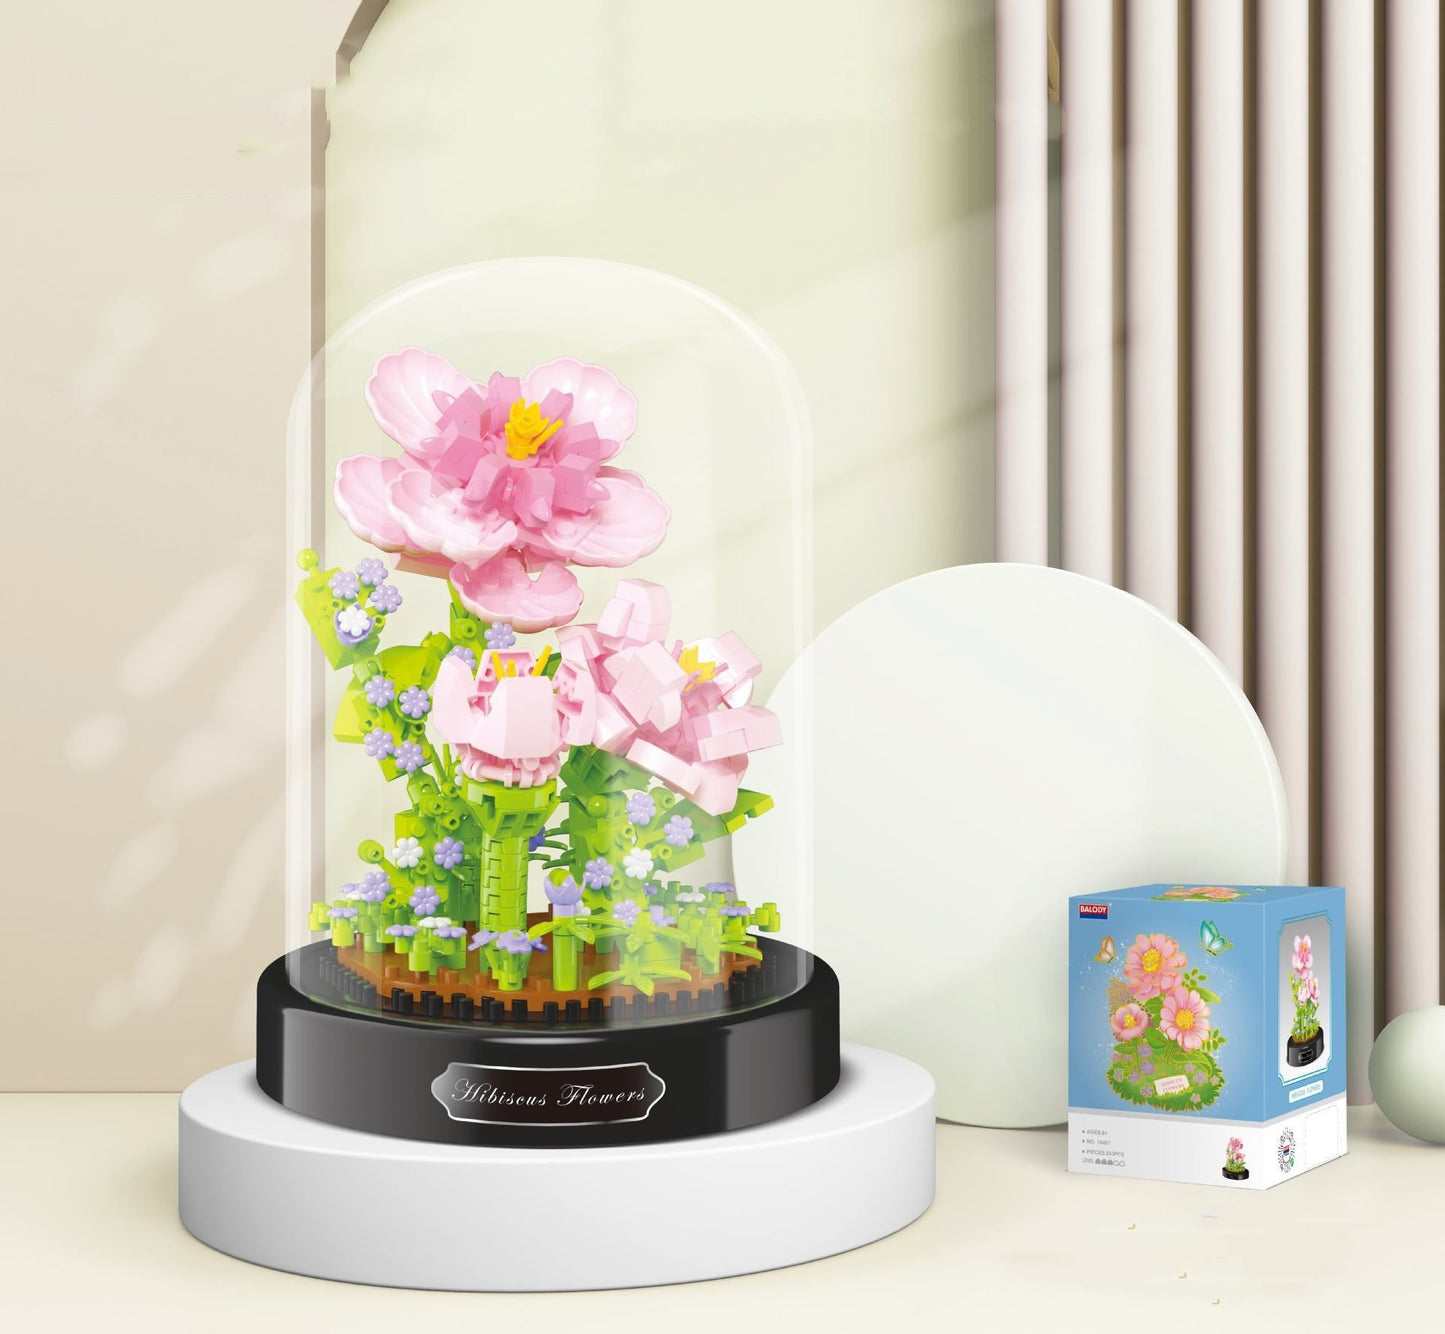 Jasmine Blossom Blocks: Miniature Garden Assembly Sets